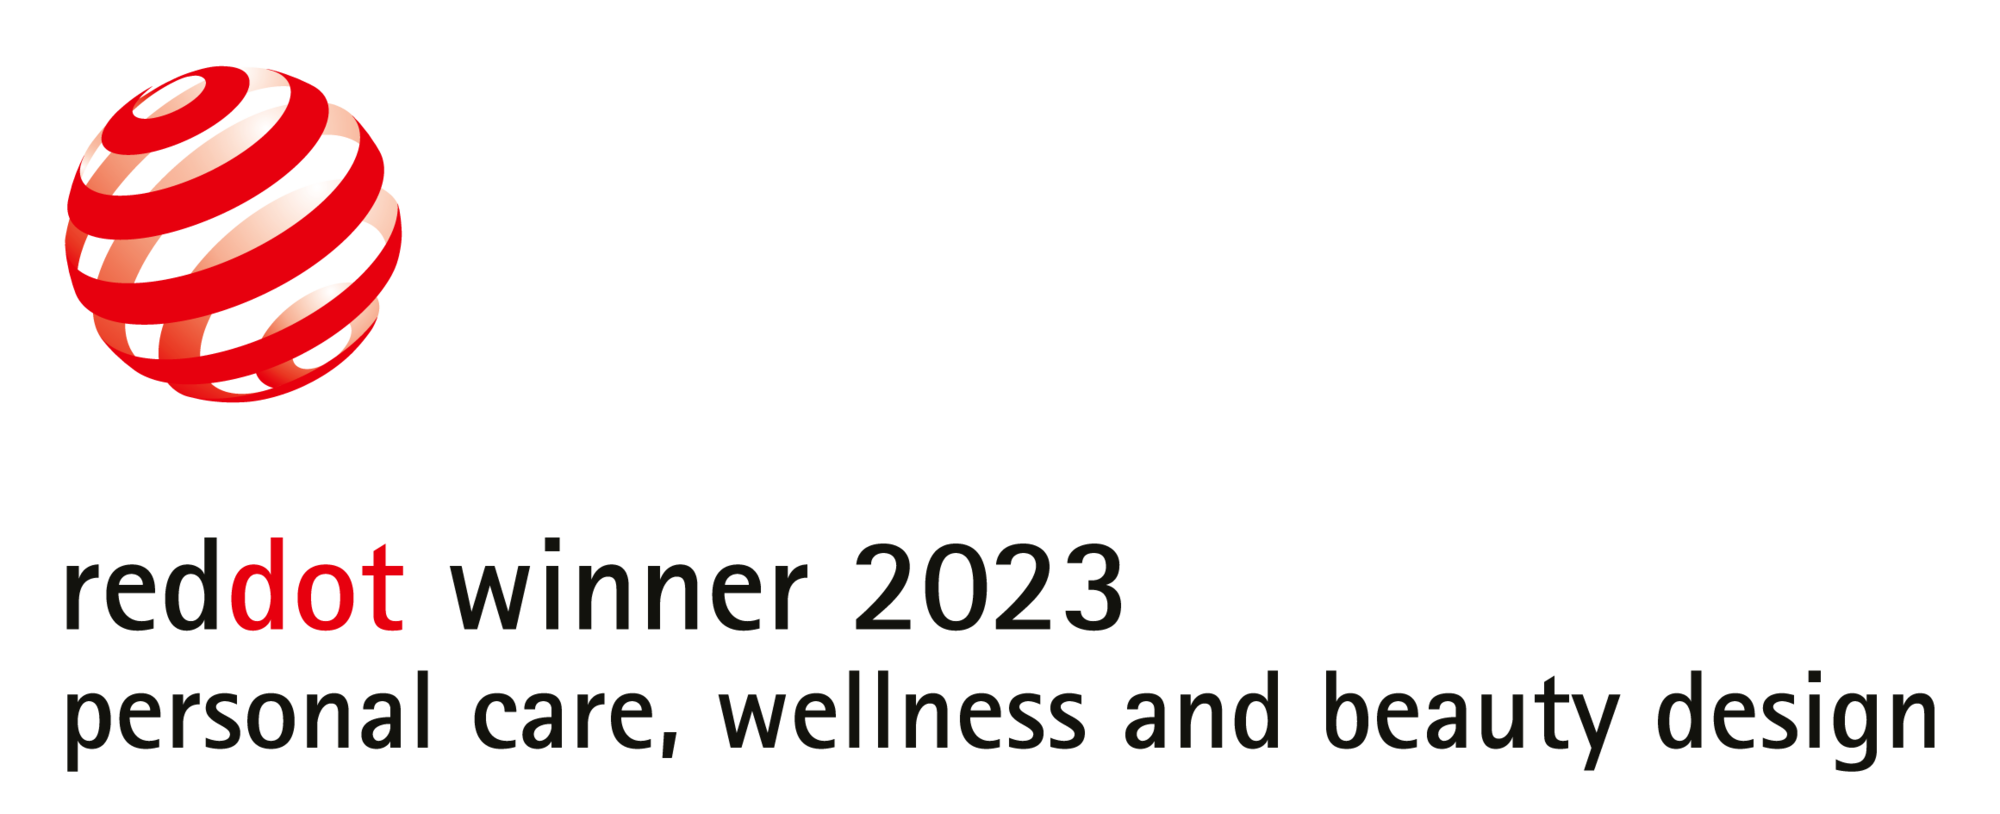 Reddot Winner 2023 for Personal Care, Wellness